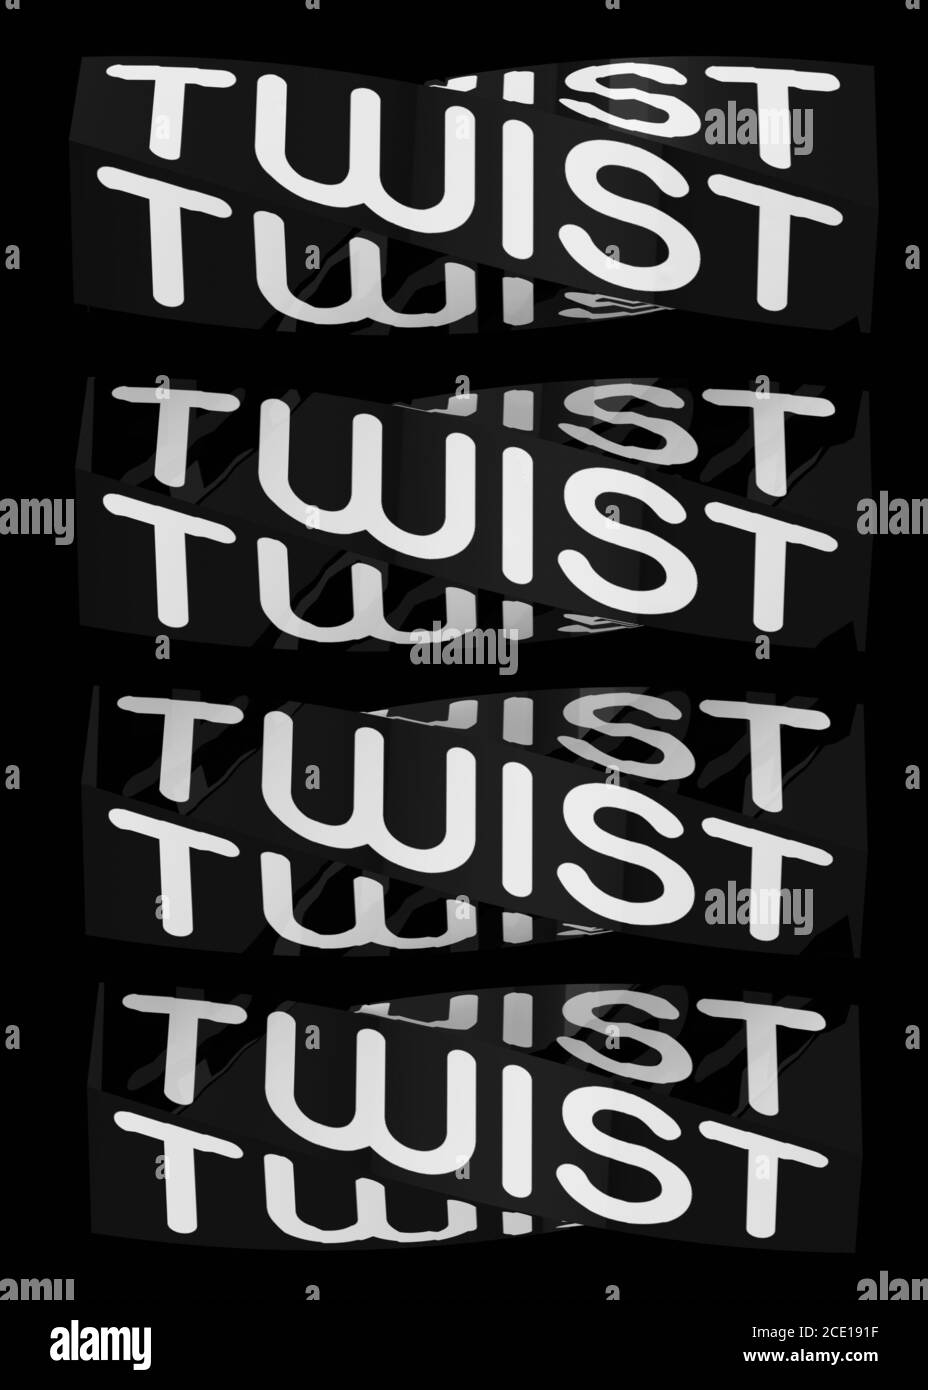 Twist Twist und Twist wieder - 3d Stockfoto